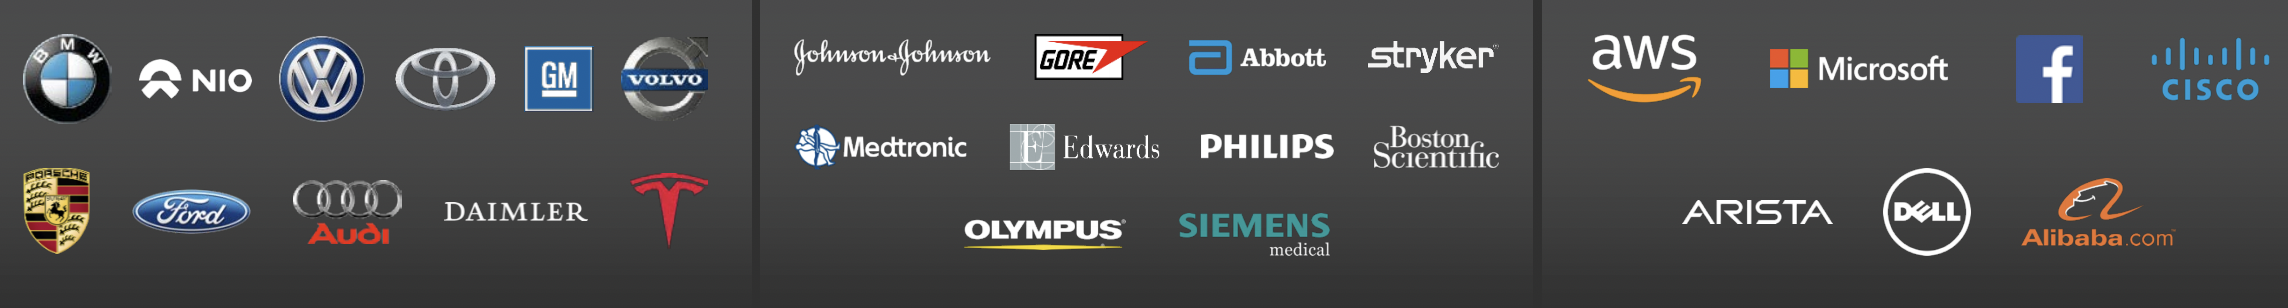 Логотипы некоторых клиентов компании. Источник: презентация компании, слайд 5